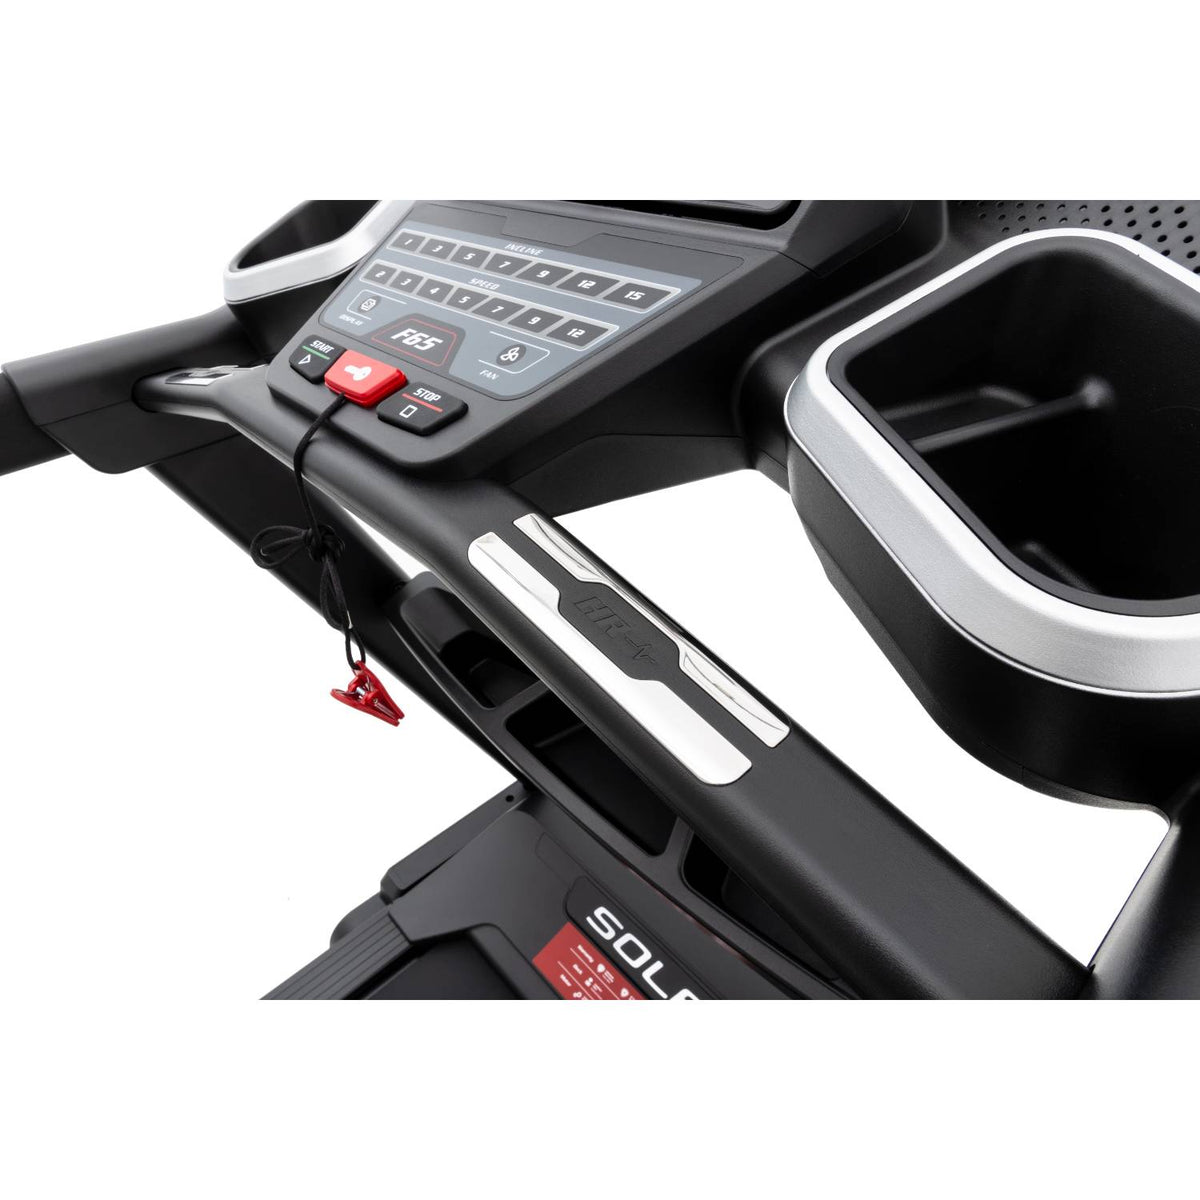 Sole F65 Treadmill